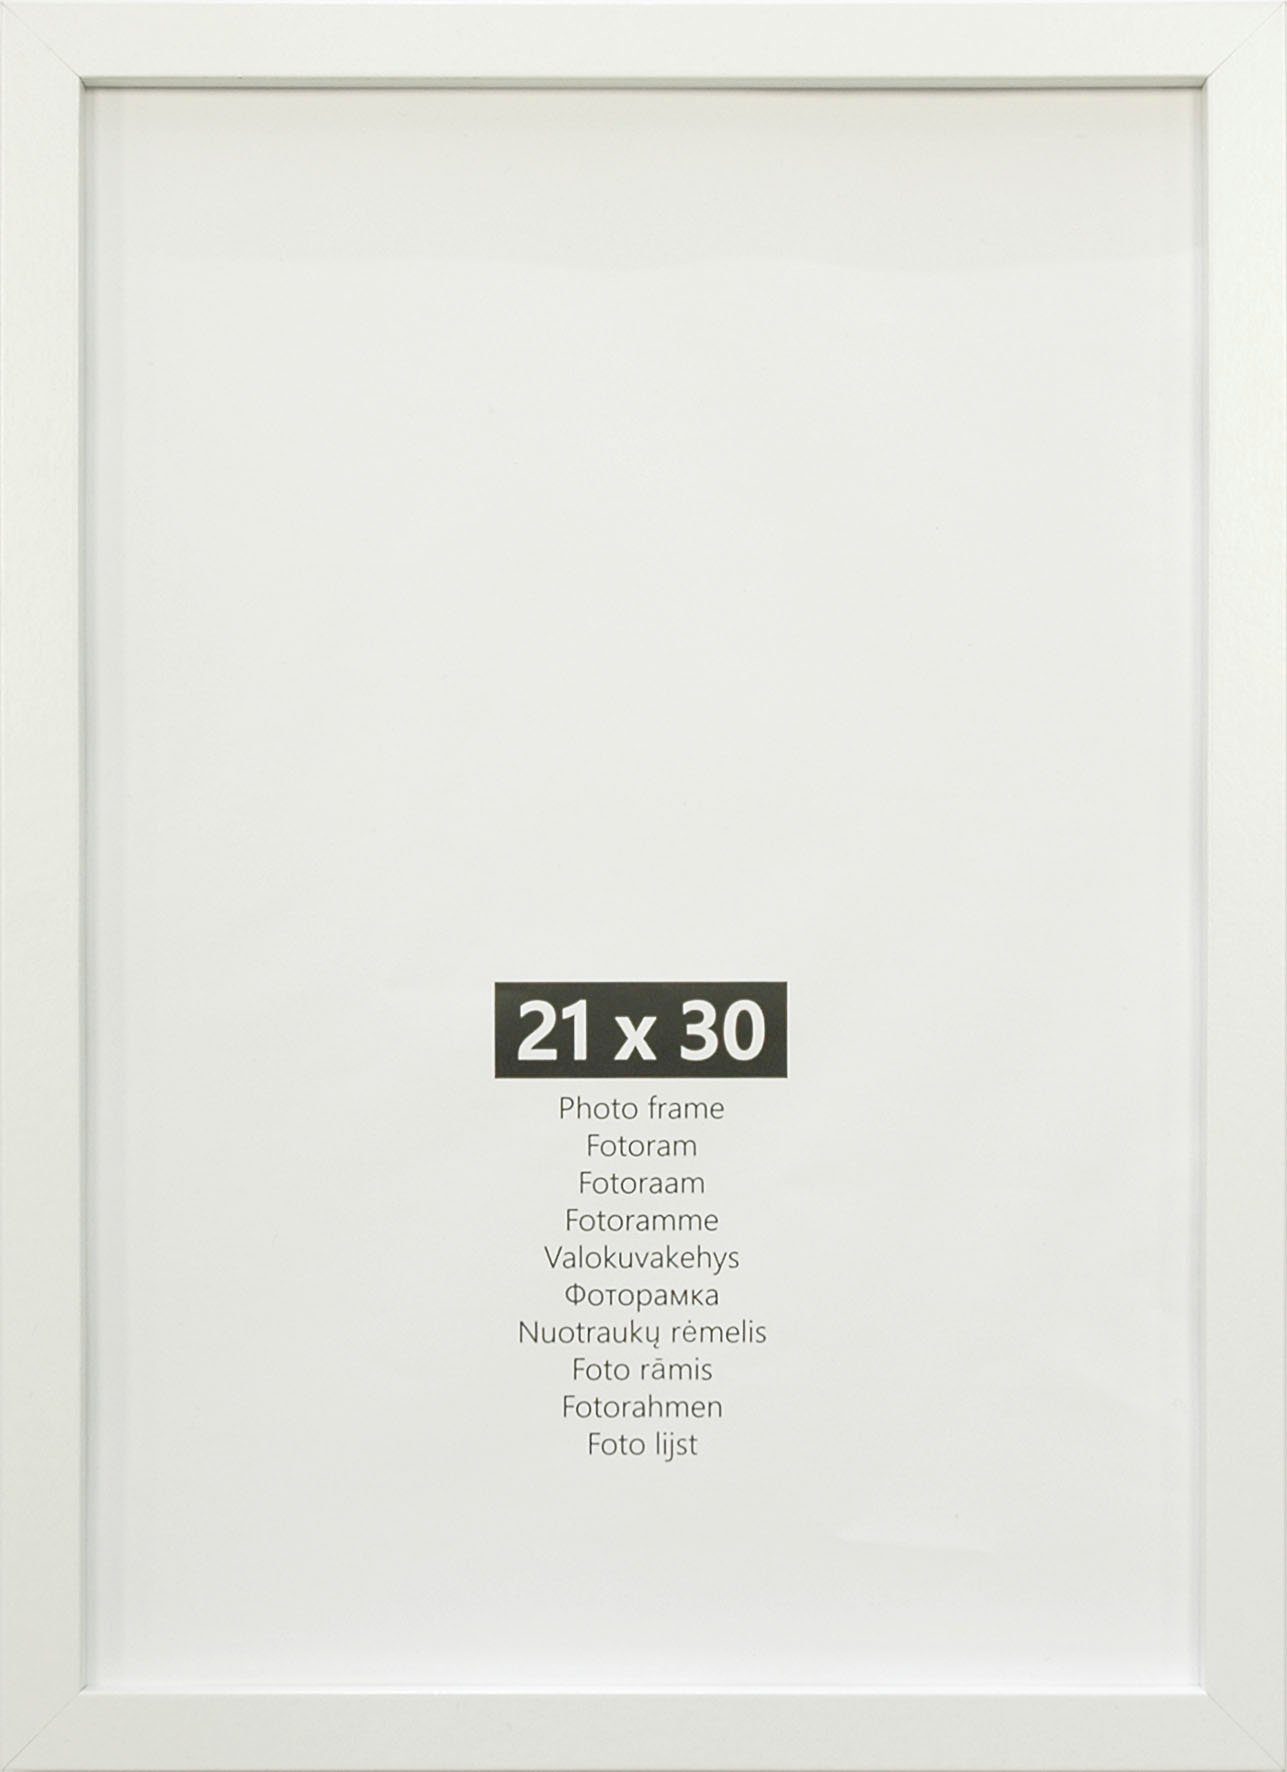 10 (DIN 2x 2x andas 10er, (DIN St), 15x20 A4) cm Weiß 4x + 13x18 21x30 Bilderrahmen-Set 10x15 2x (Set, + Bilderrahmen + A5)